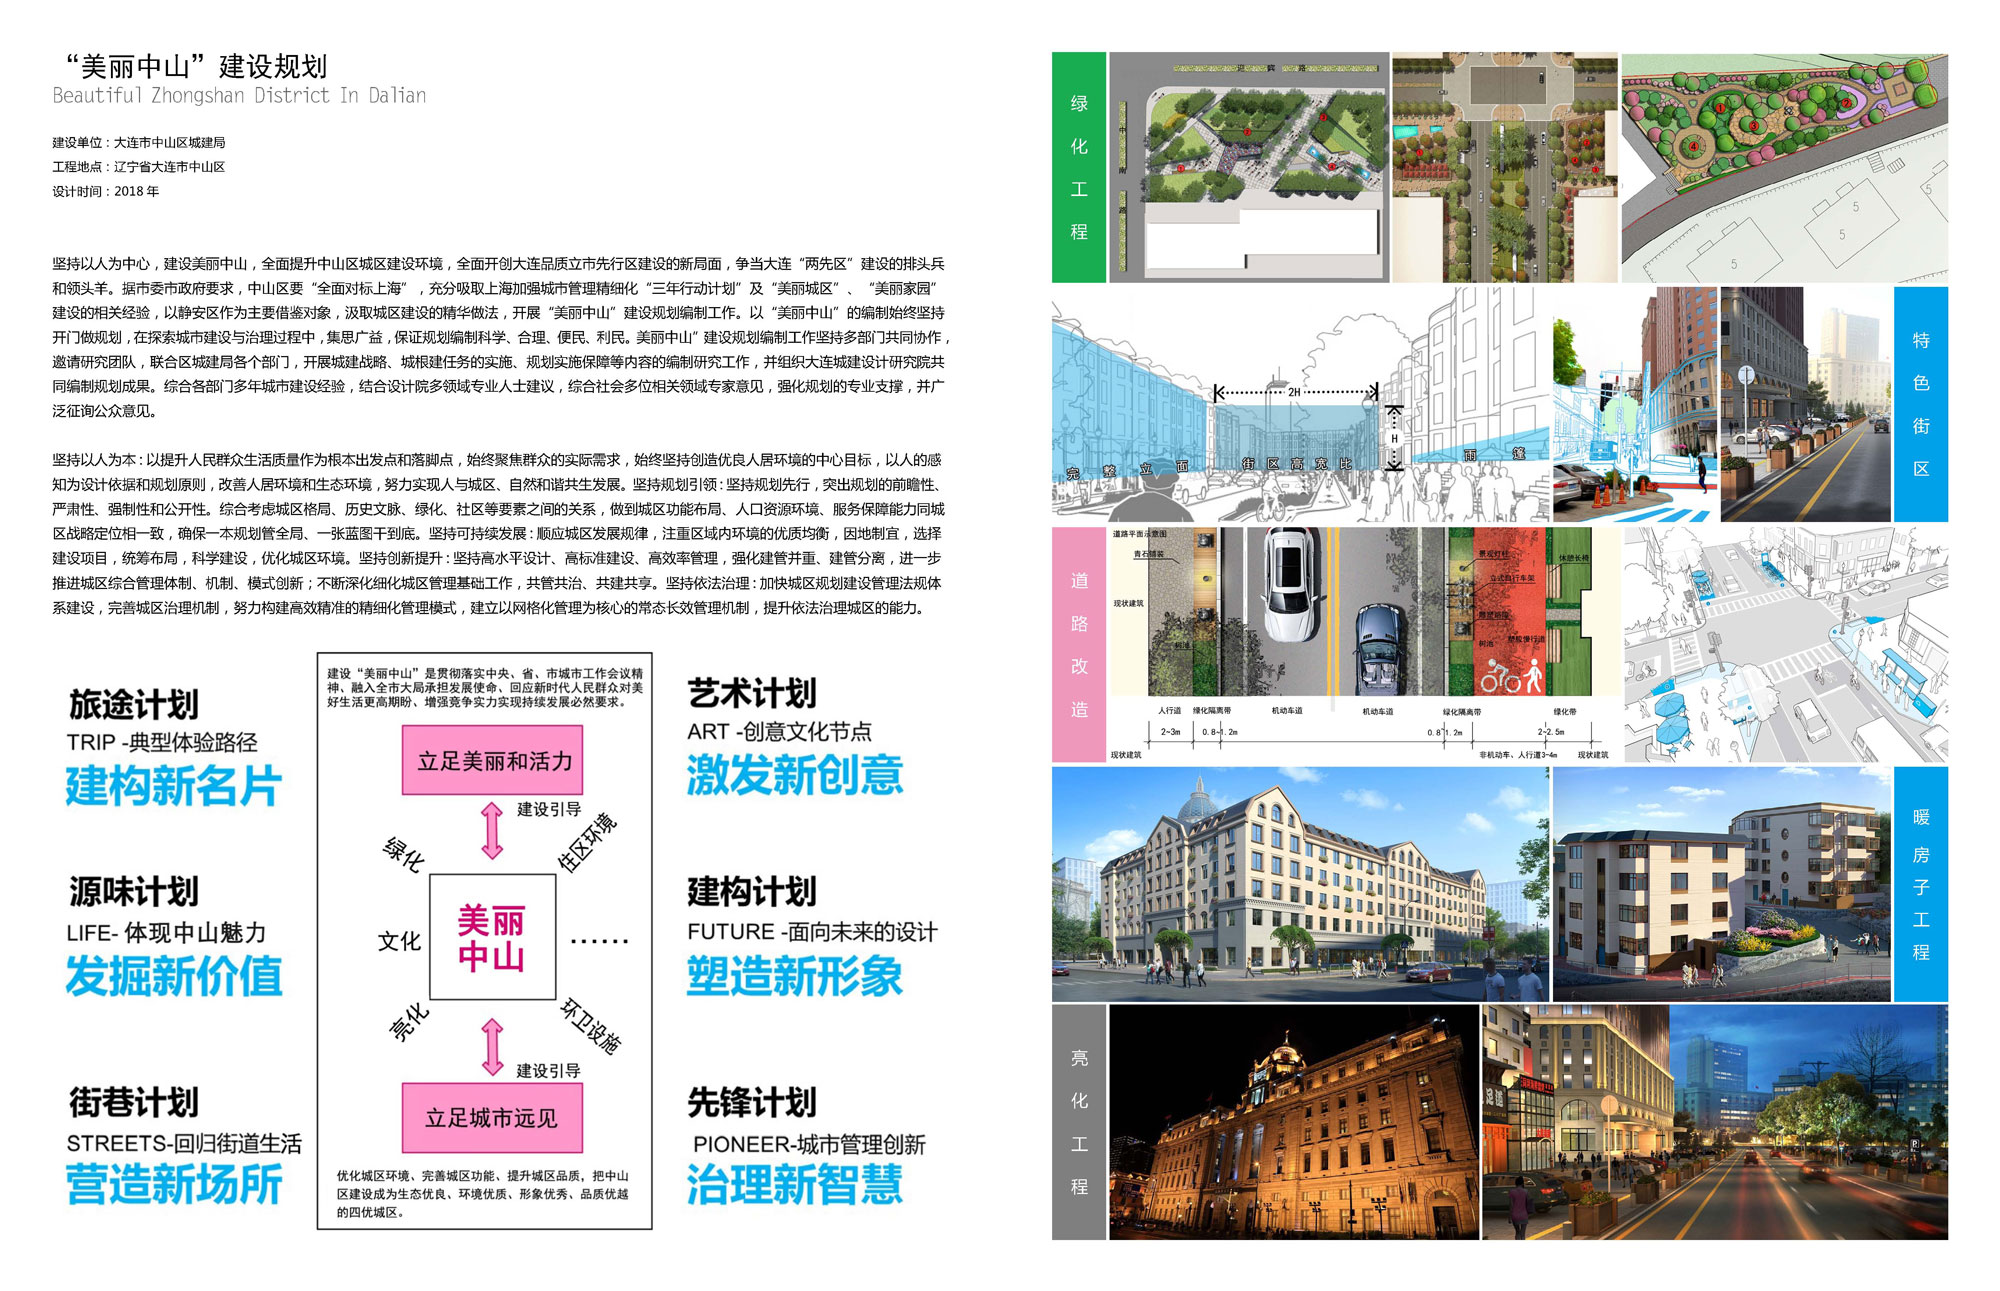 “Beautiful Zhongshan” Construction Planning